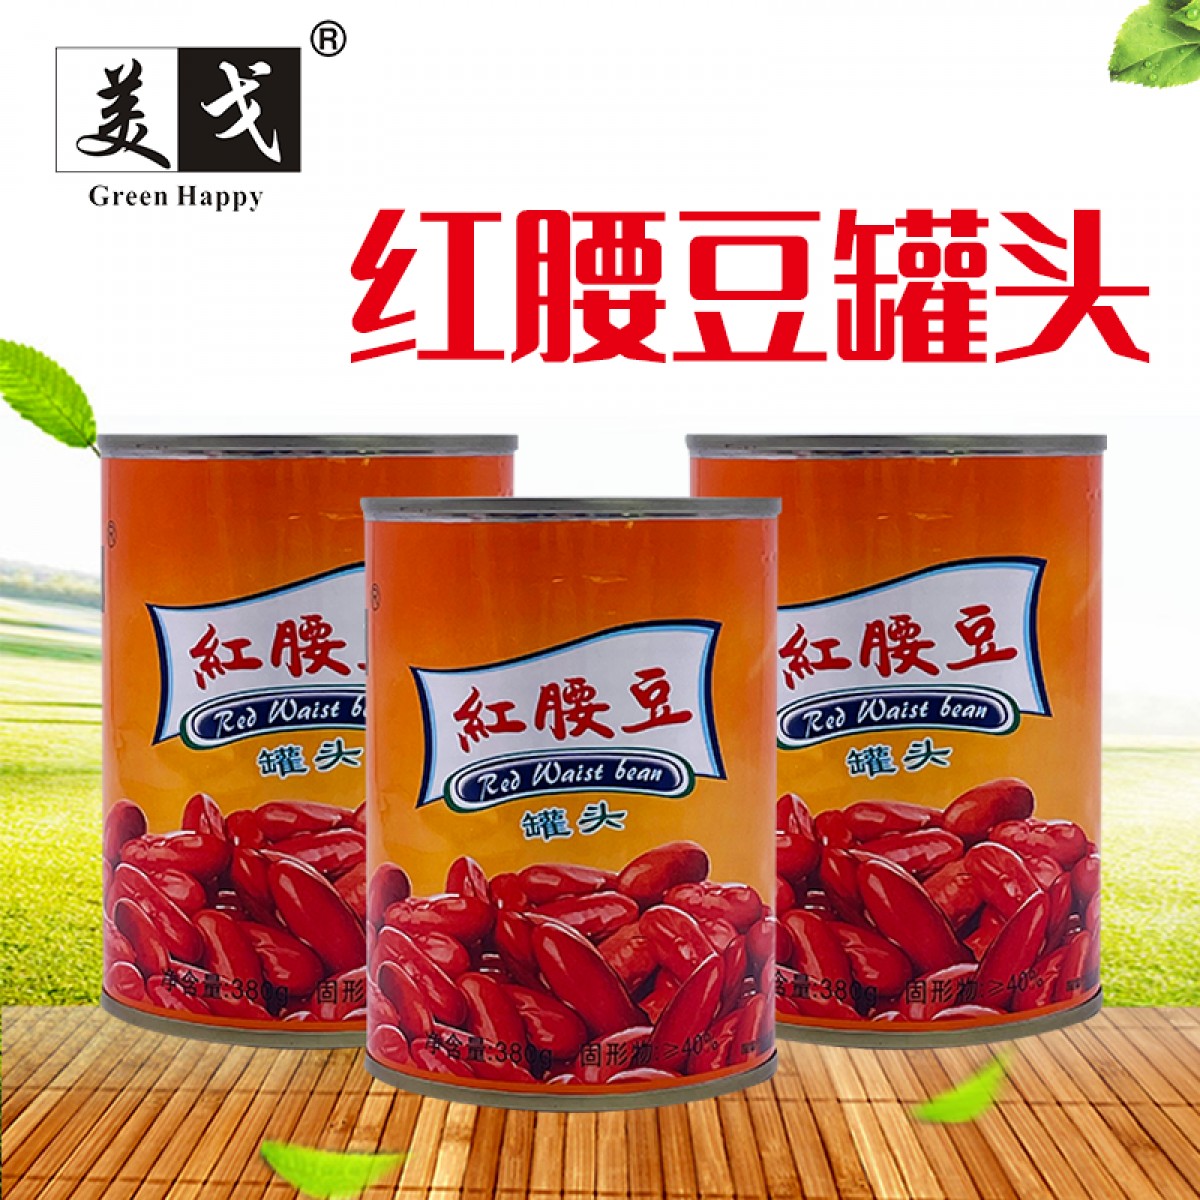 美戈新疆罐头食品红腰豆罐头380g/罐×24罐